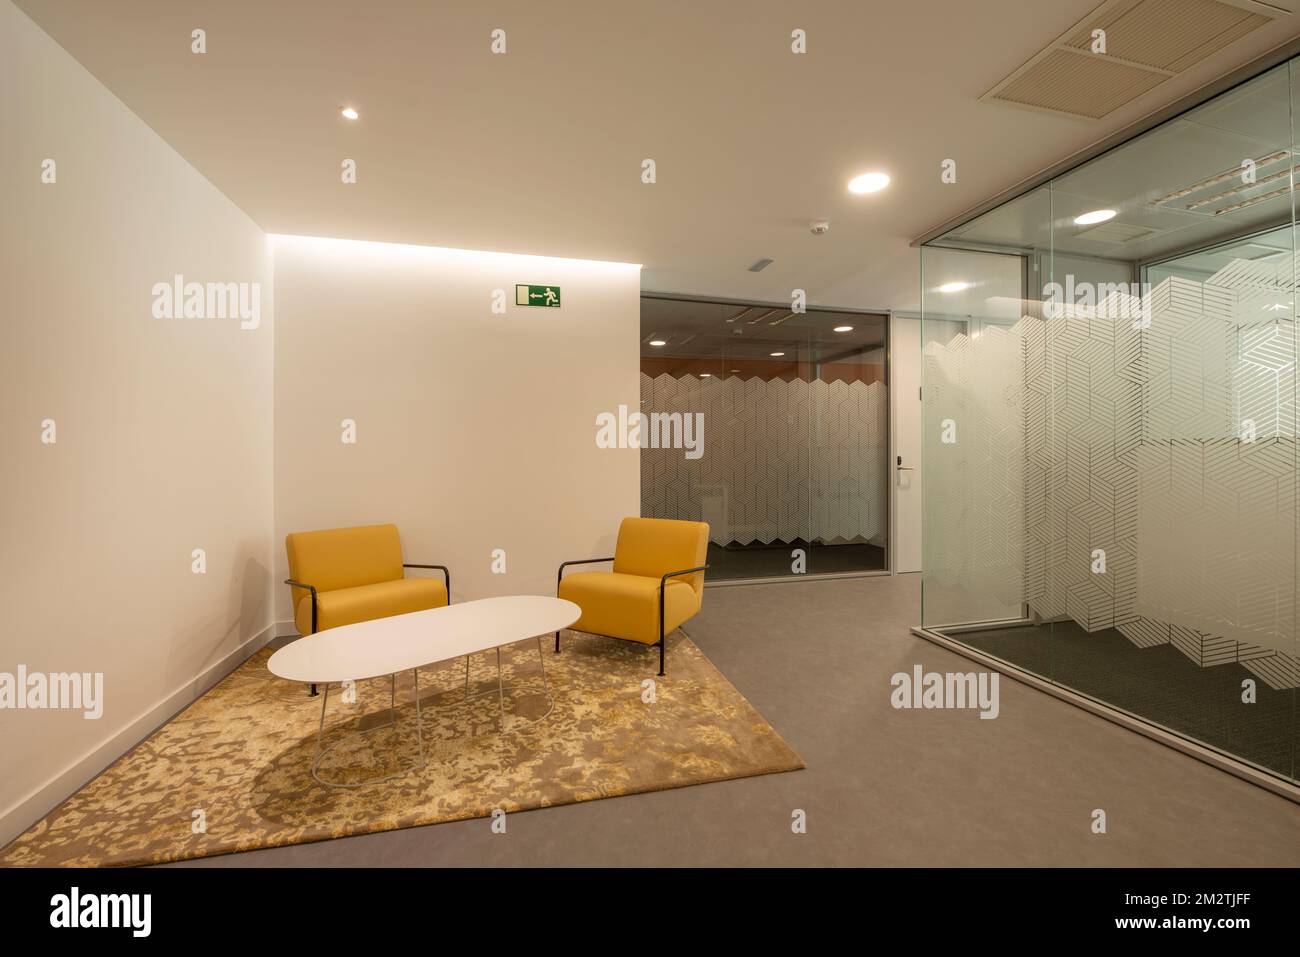 Eingangshalle und Wartezimmer mit gelben Designersofas, passendem Teppich und Büros mit Glastrennwänden Stockfoto